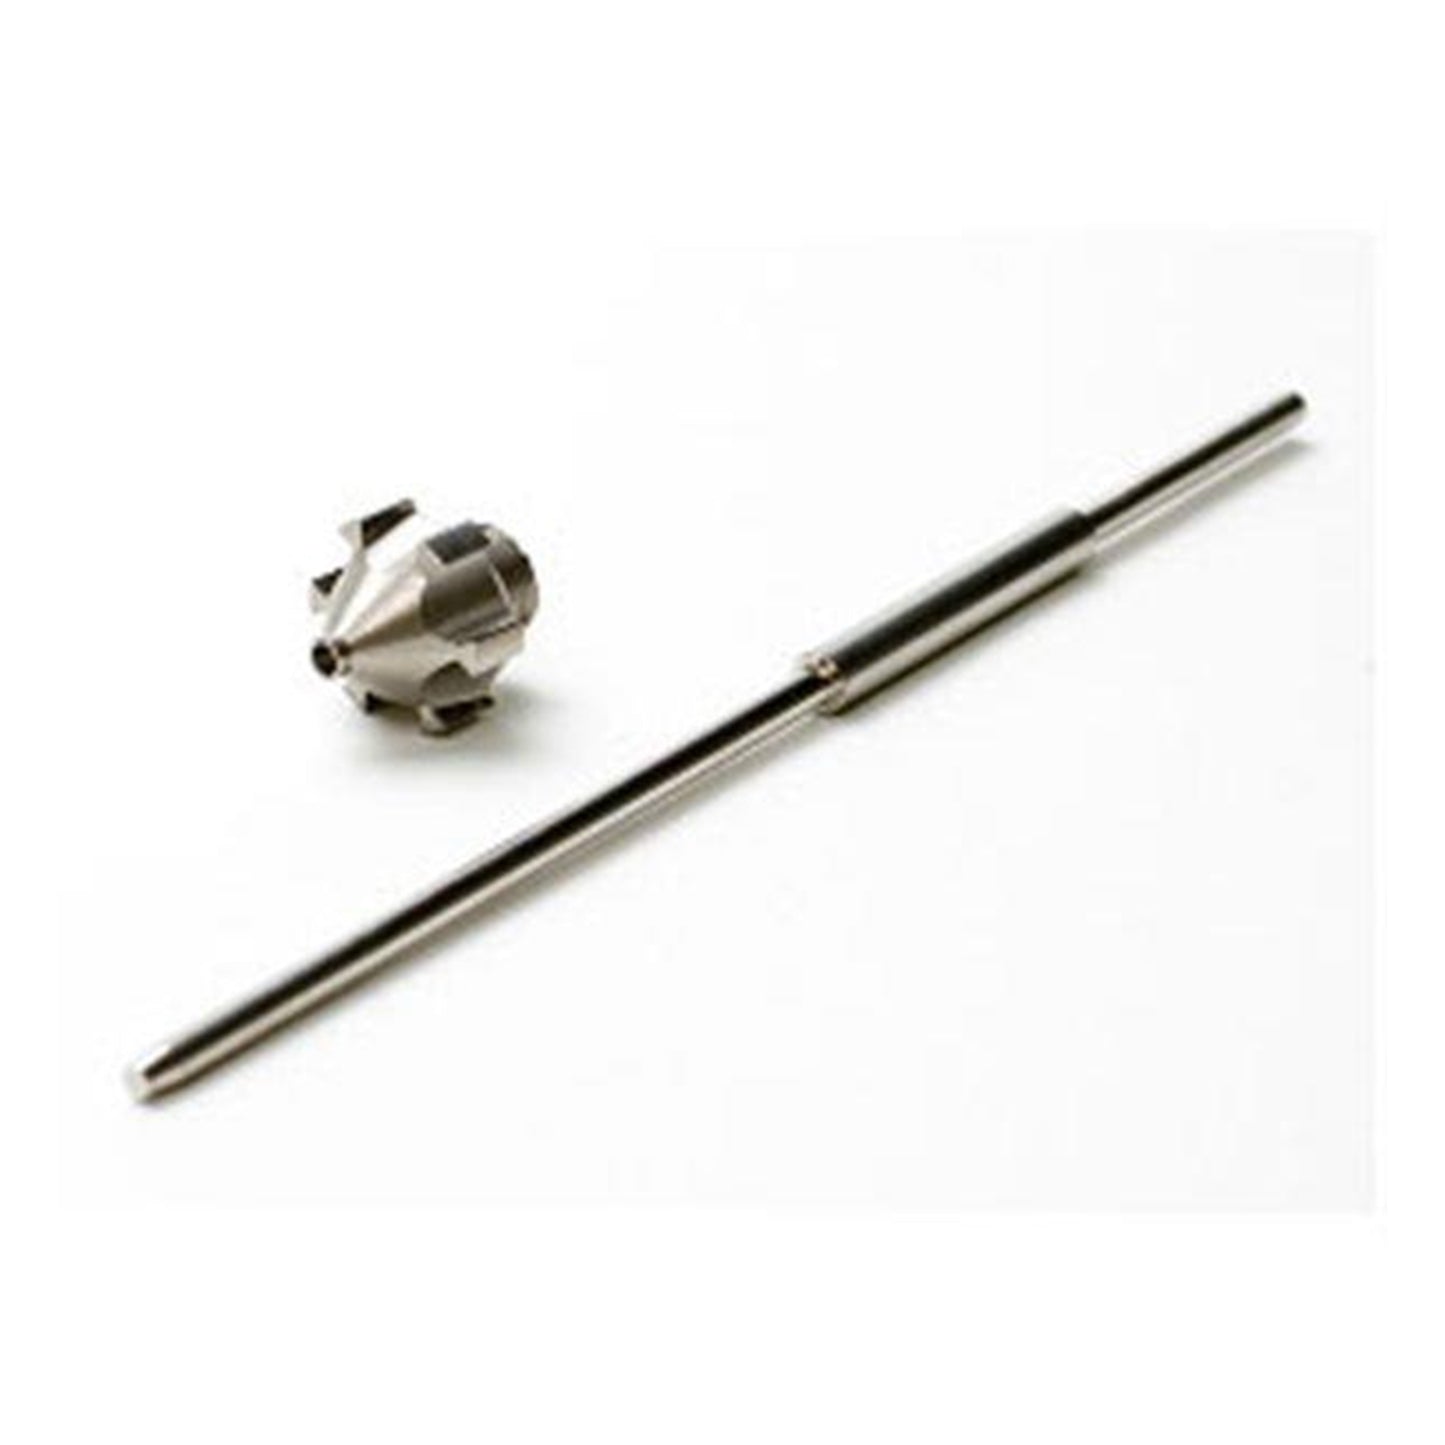 1 mm (.04") Needle Kit for Earlex Spray Station HV5000/HV5500/HV6900 alt 0